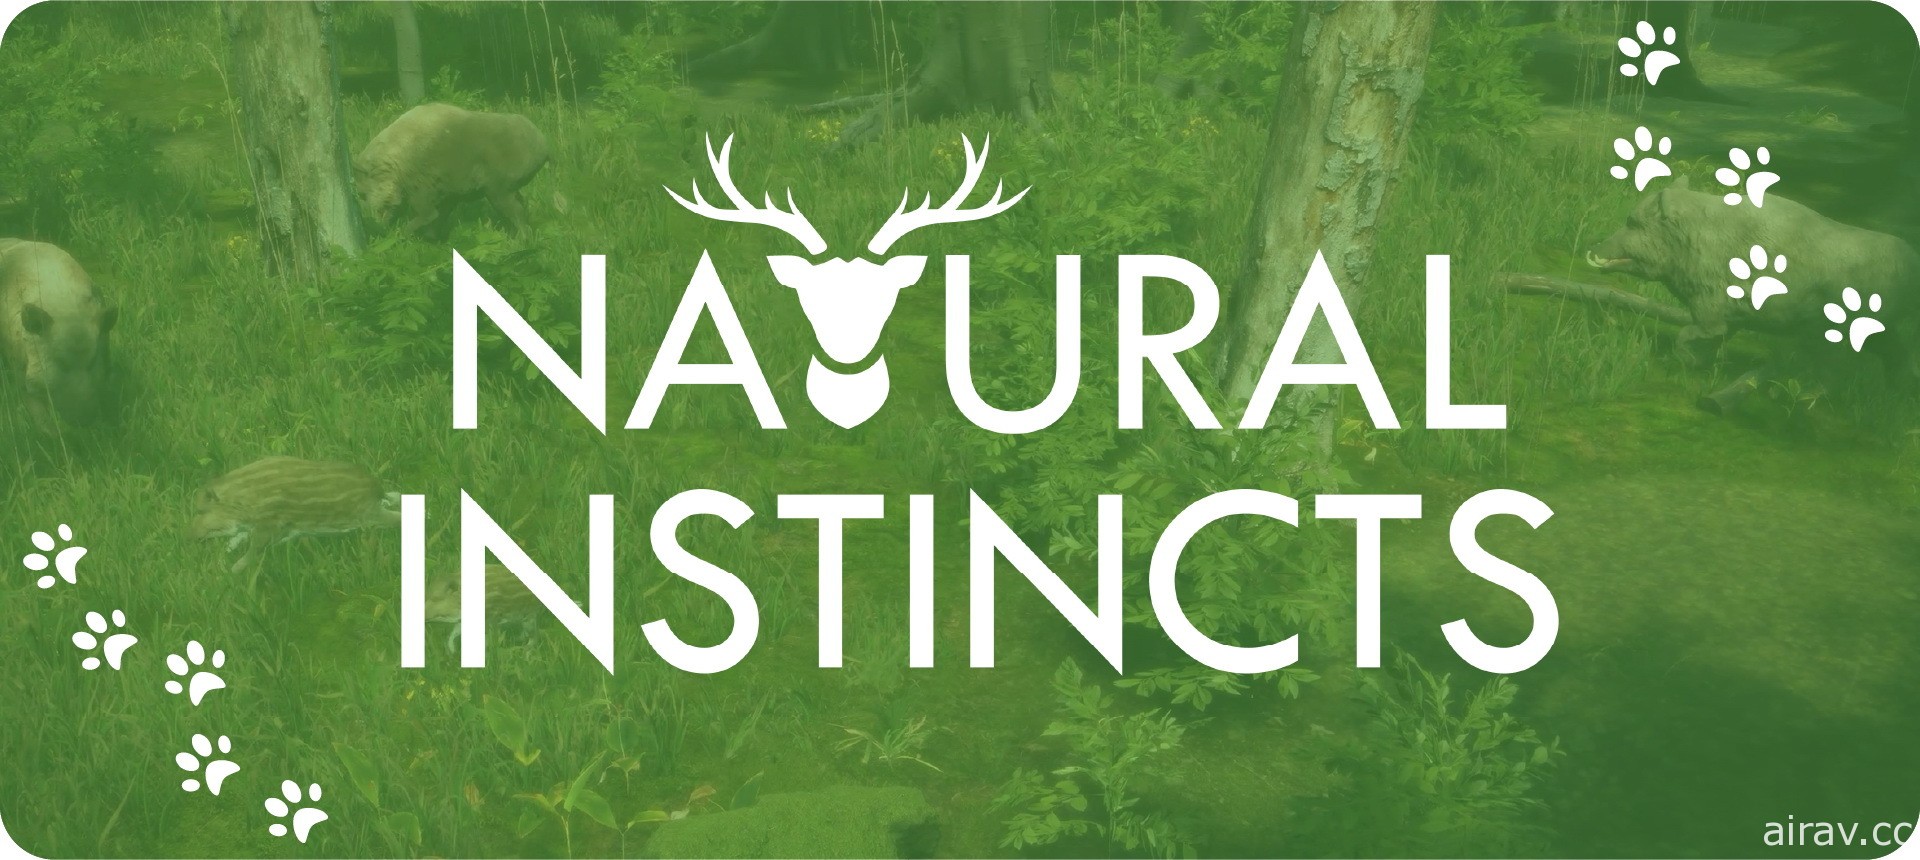 《自然本能》展開搶先體驗 深入森林繁殖野生動物並盡力維持生態平衡